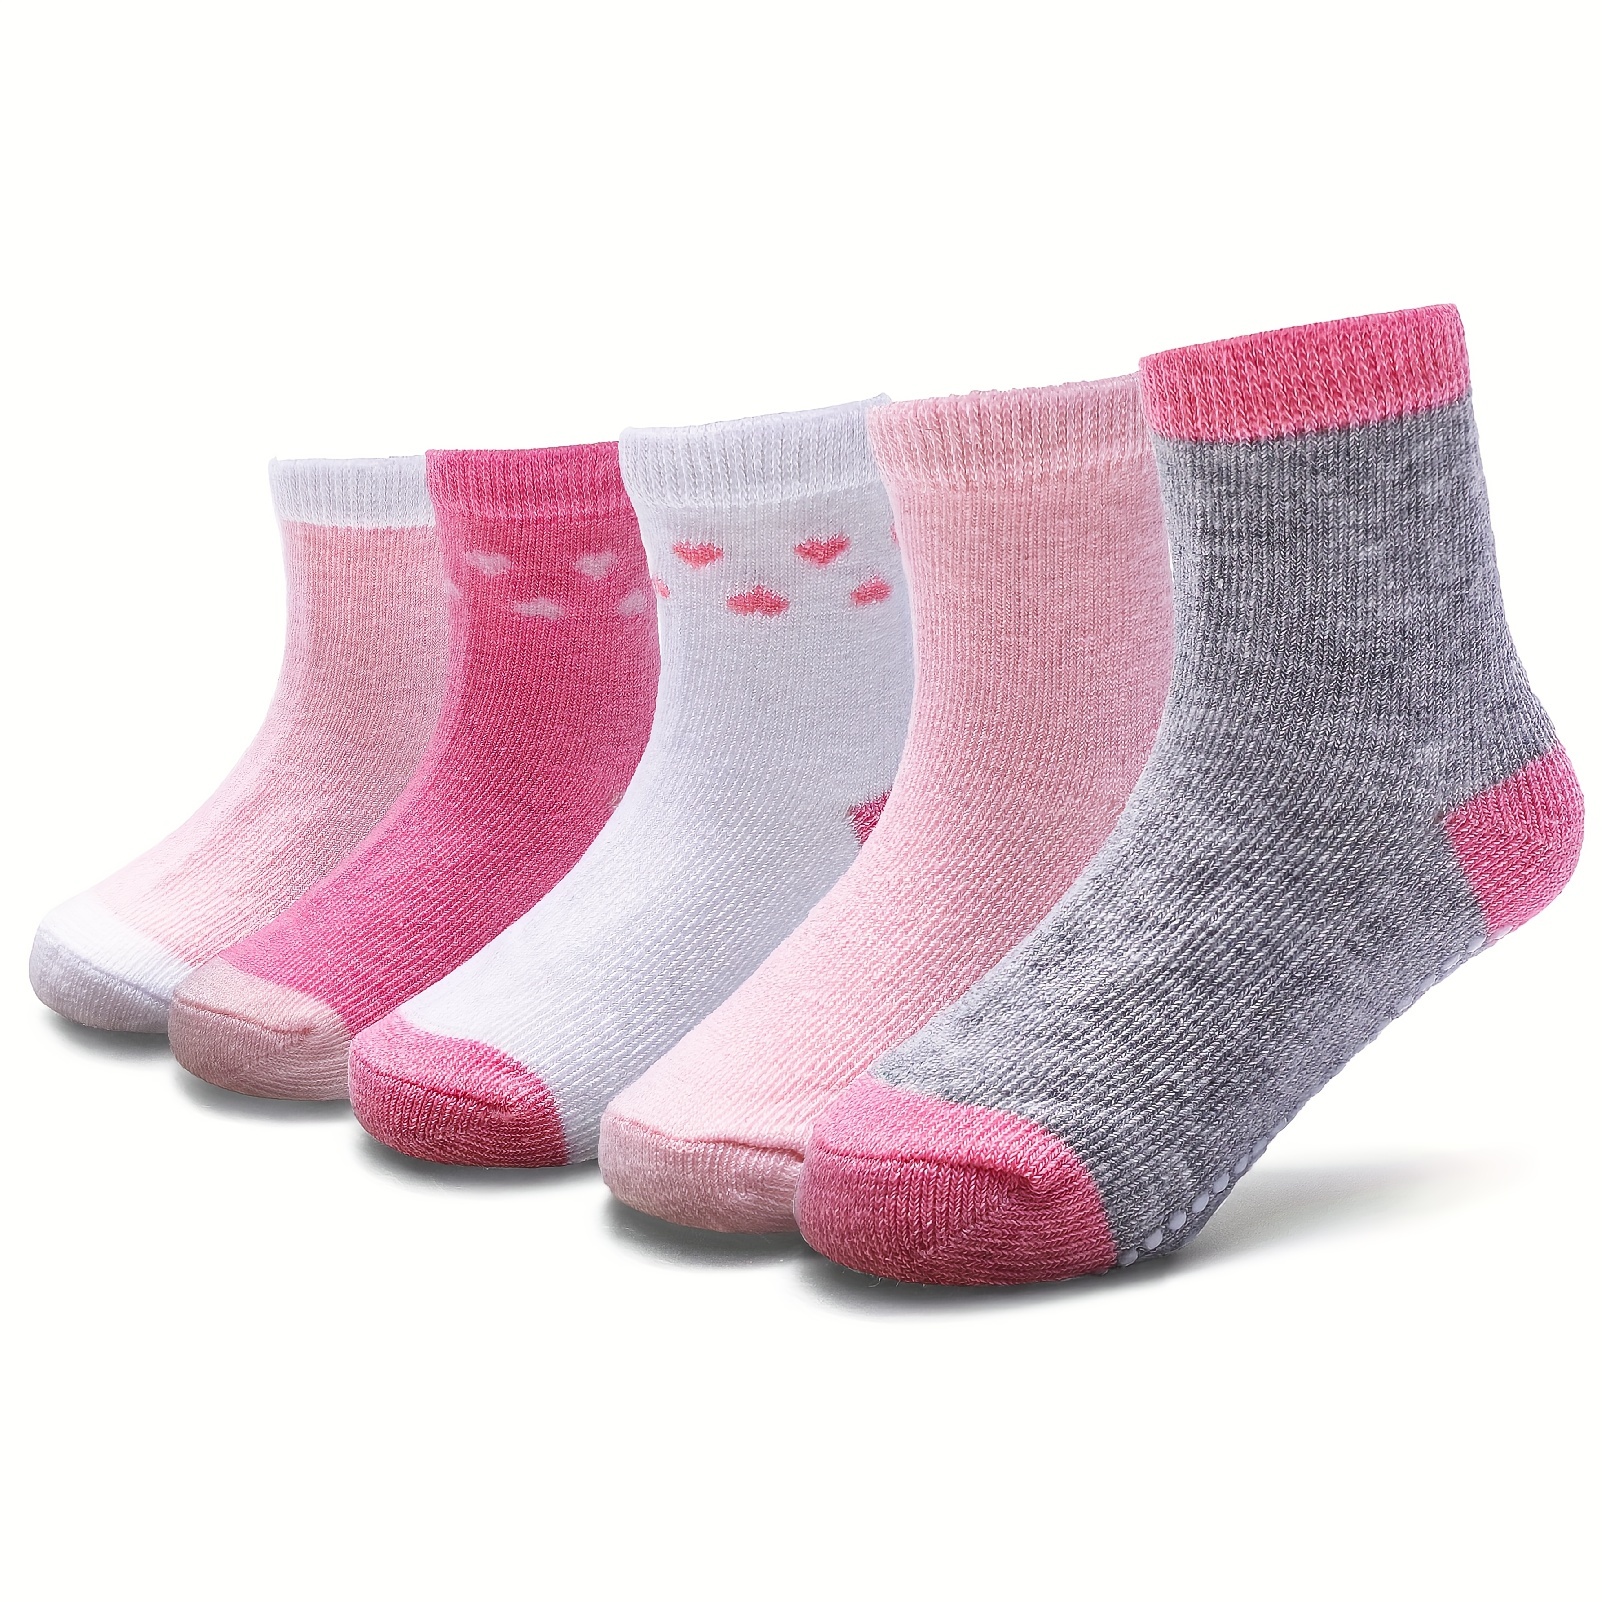 Pack 7 pares de calcetines largos de colores básicos - Calcetines - ROPA -  Niña - Niños 